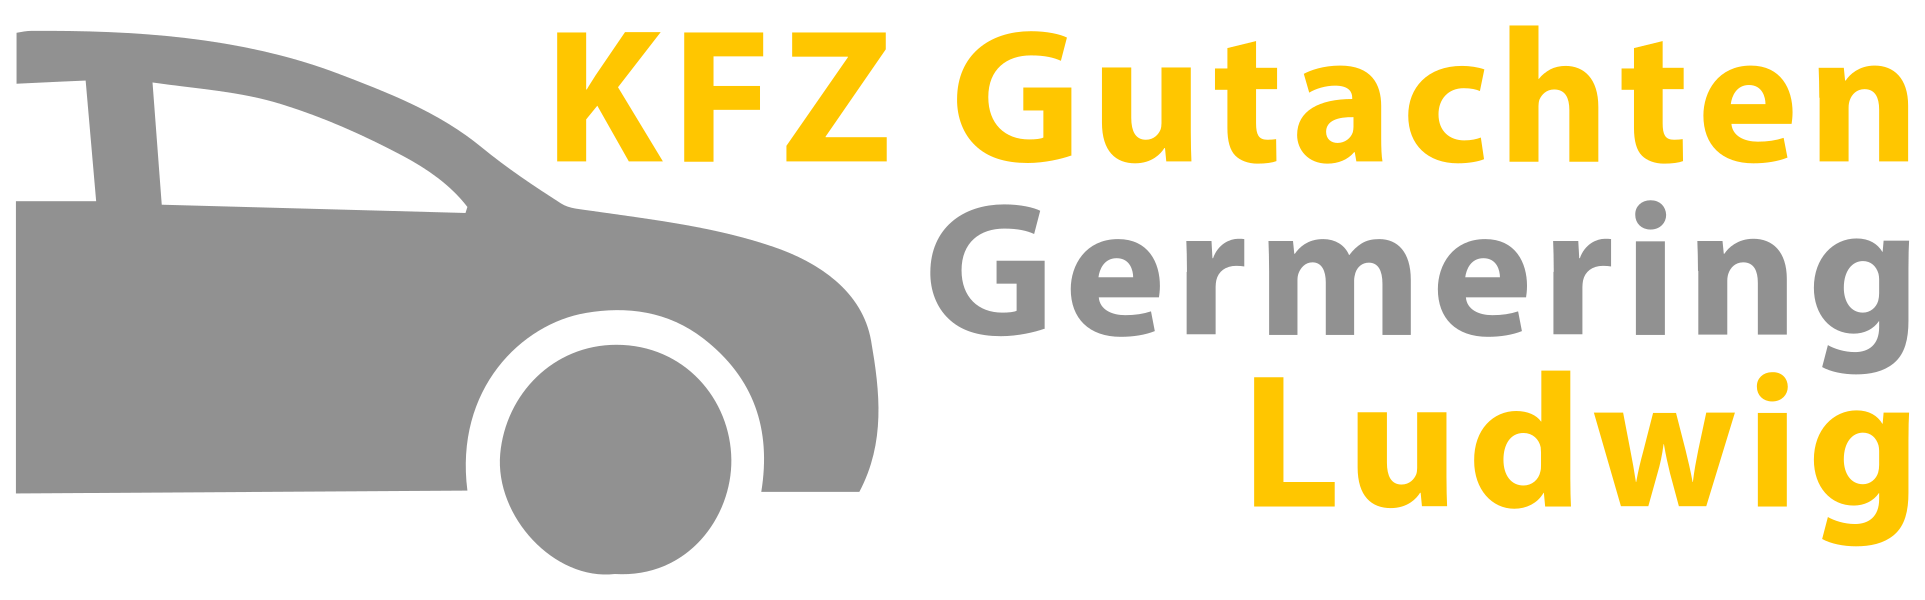 KFZ Gutachten Germering Ludwig